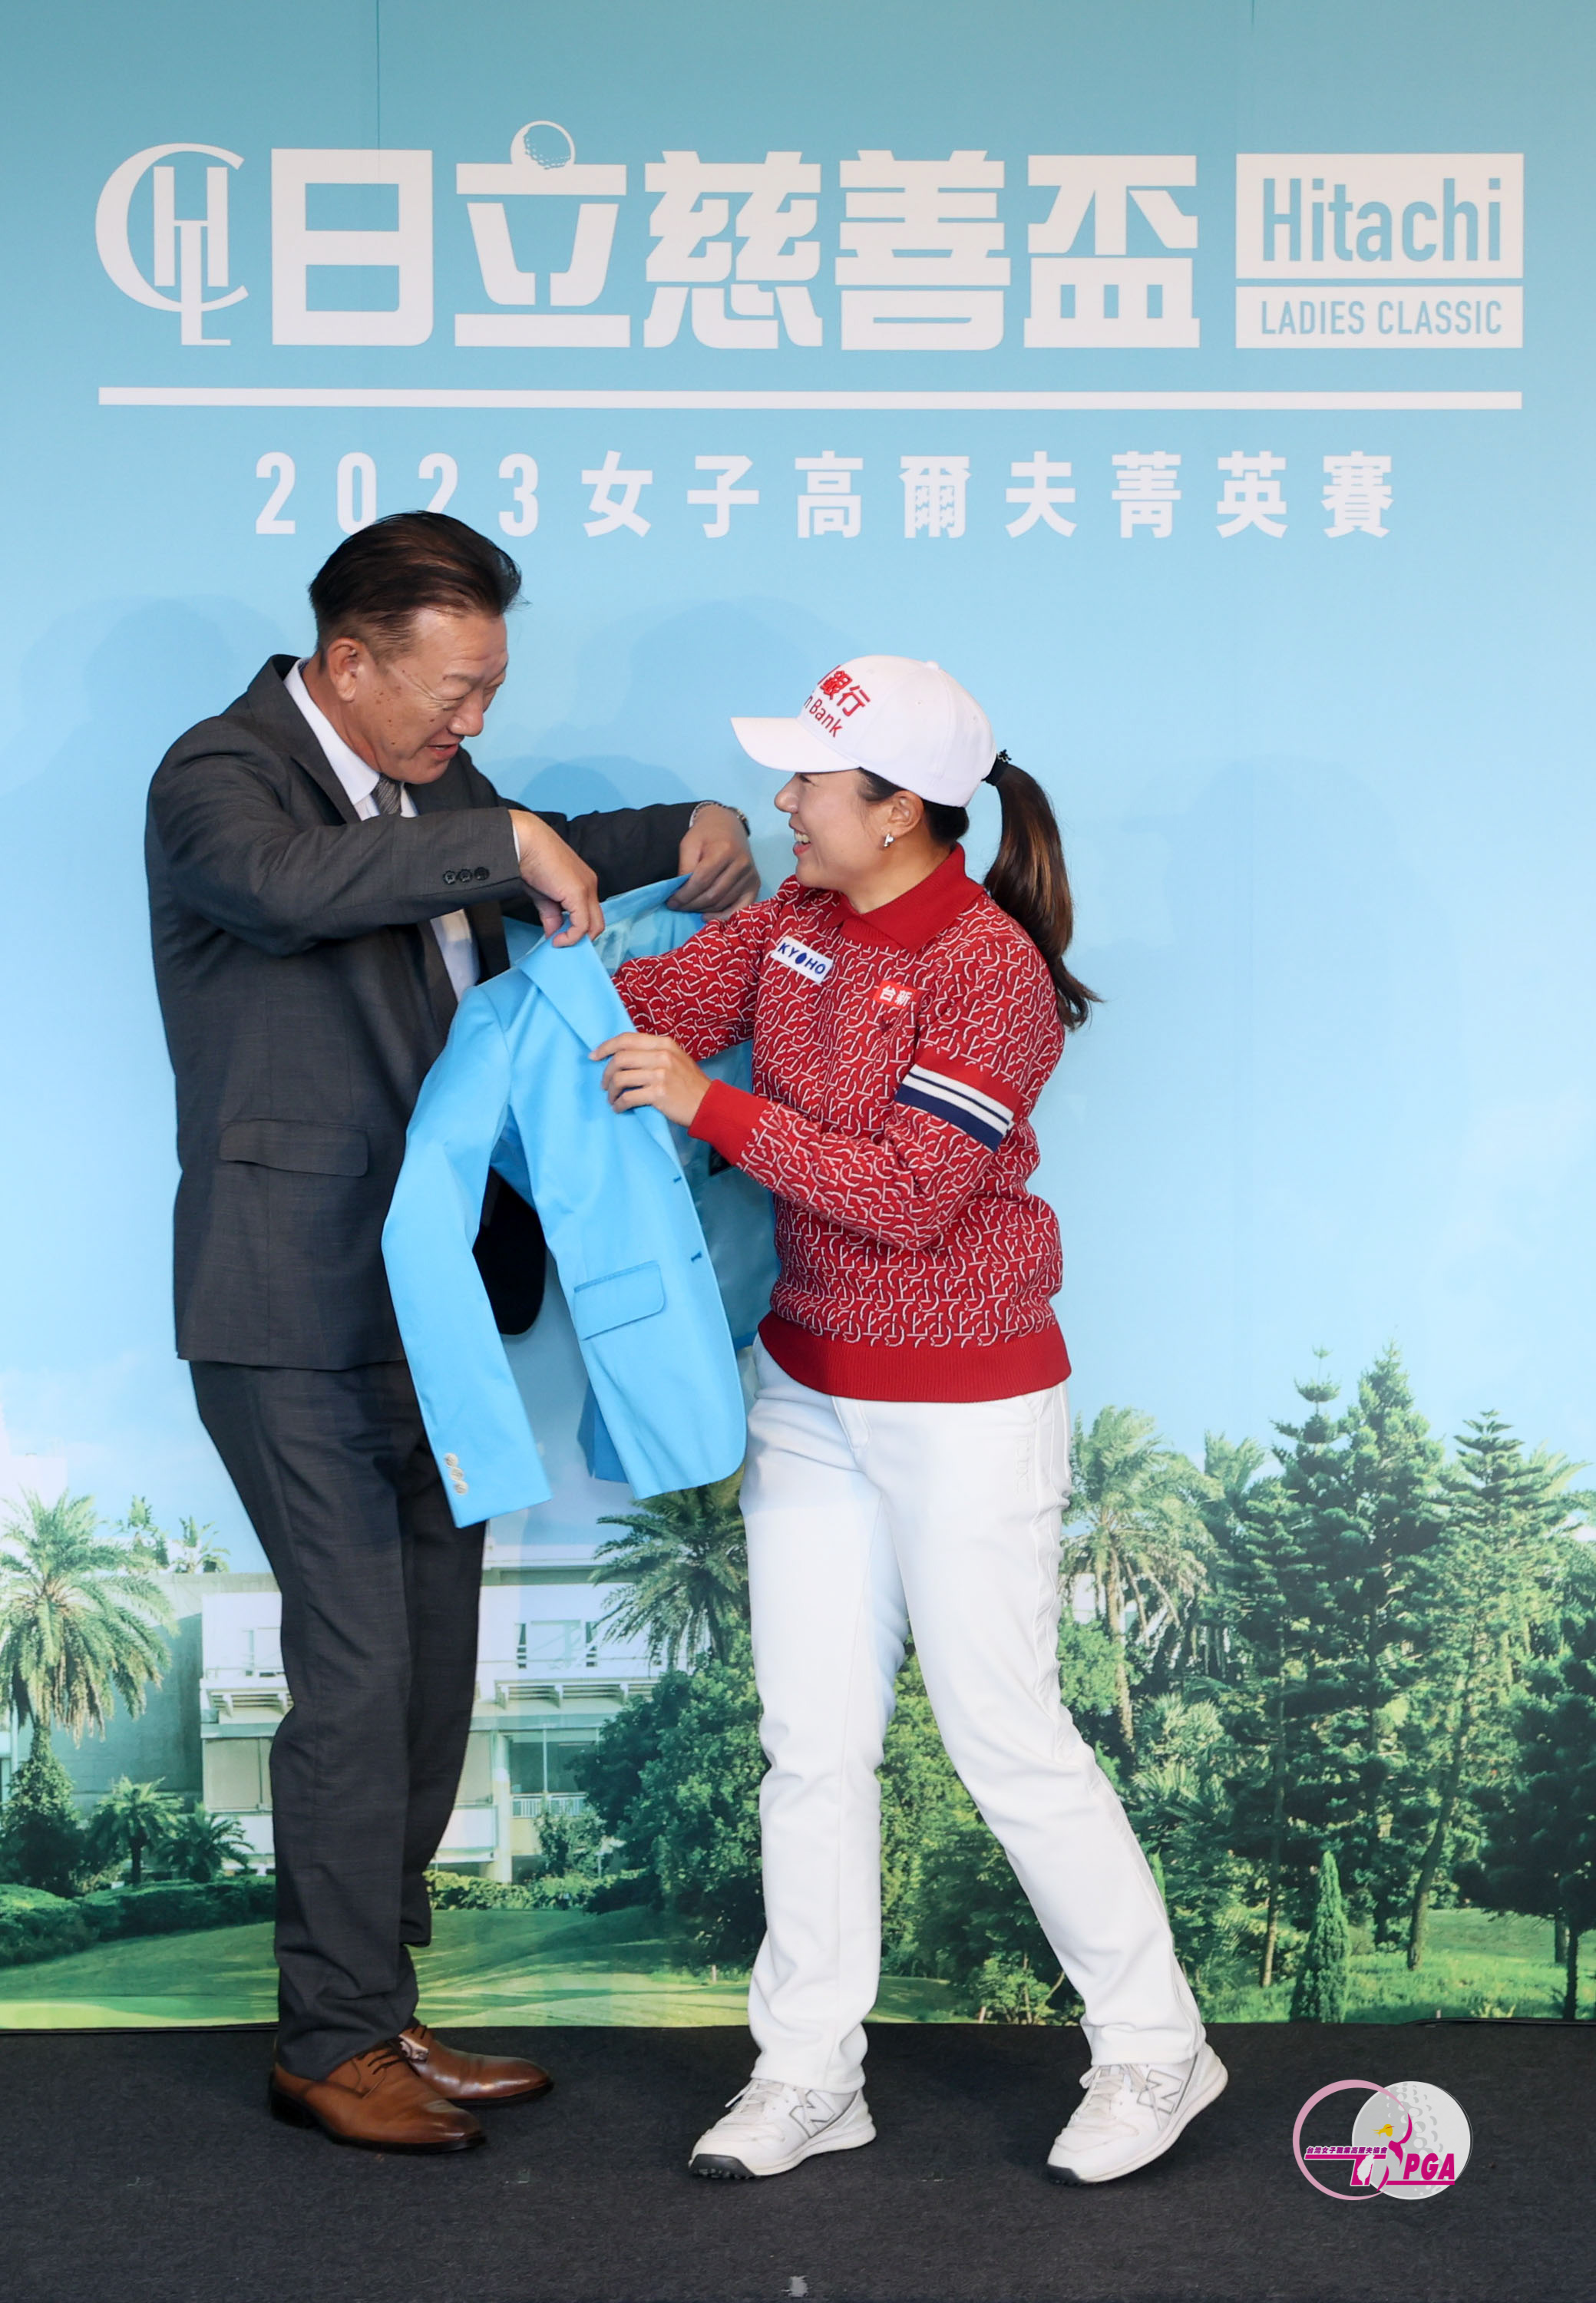 台灣日立江森自控股份有限公司董事長菊地正幸(左)為2022冠軍選手蔡佩穎右穿上冠軍夾克。TLPGA提供 